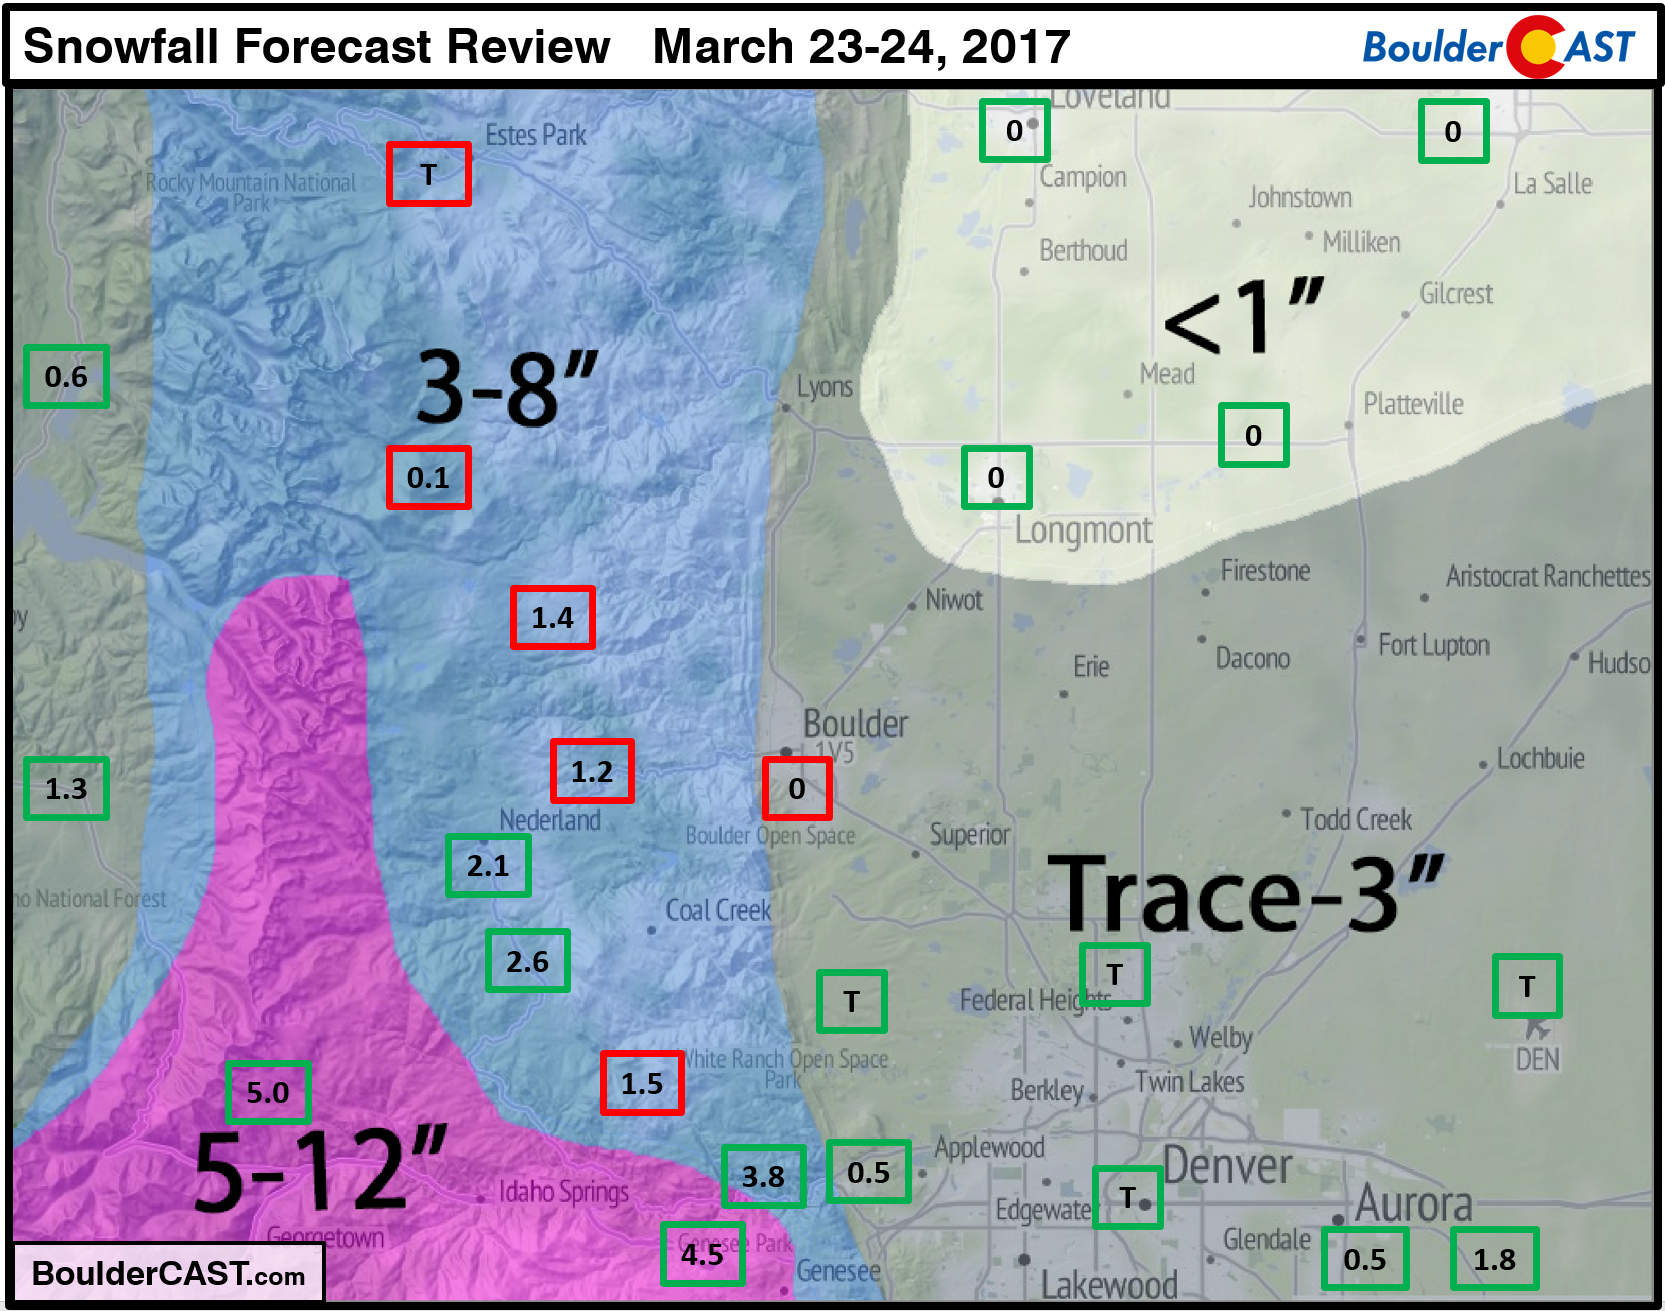 Snowfall_Forecast_Review_March_23_24_2017_Denver_Colorado